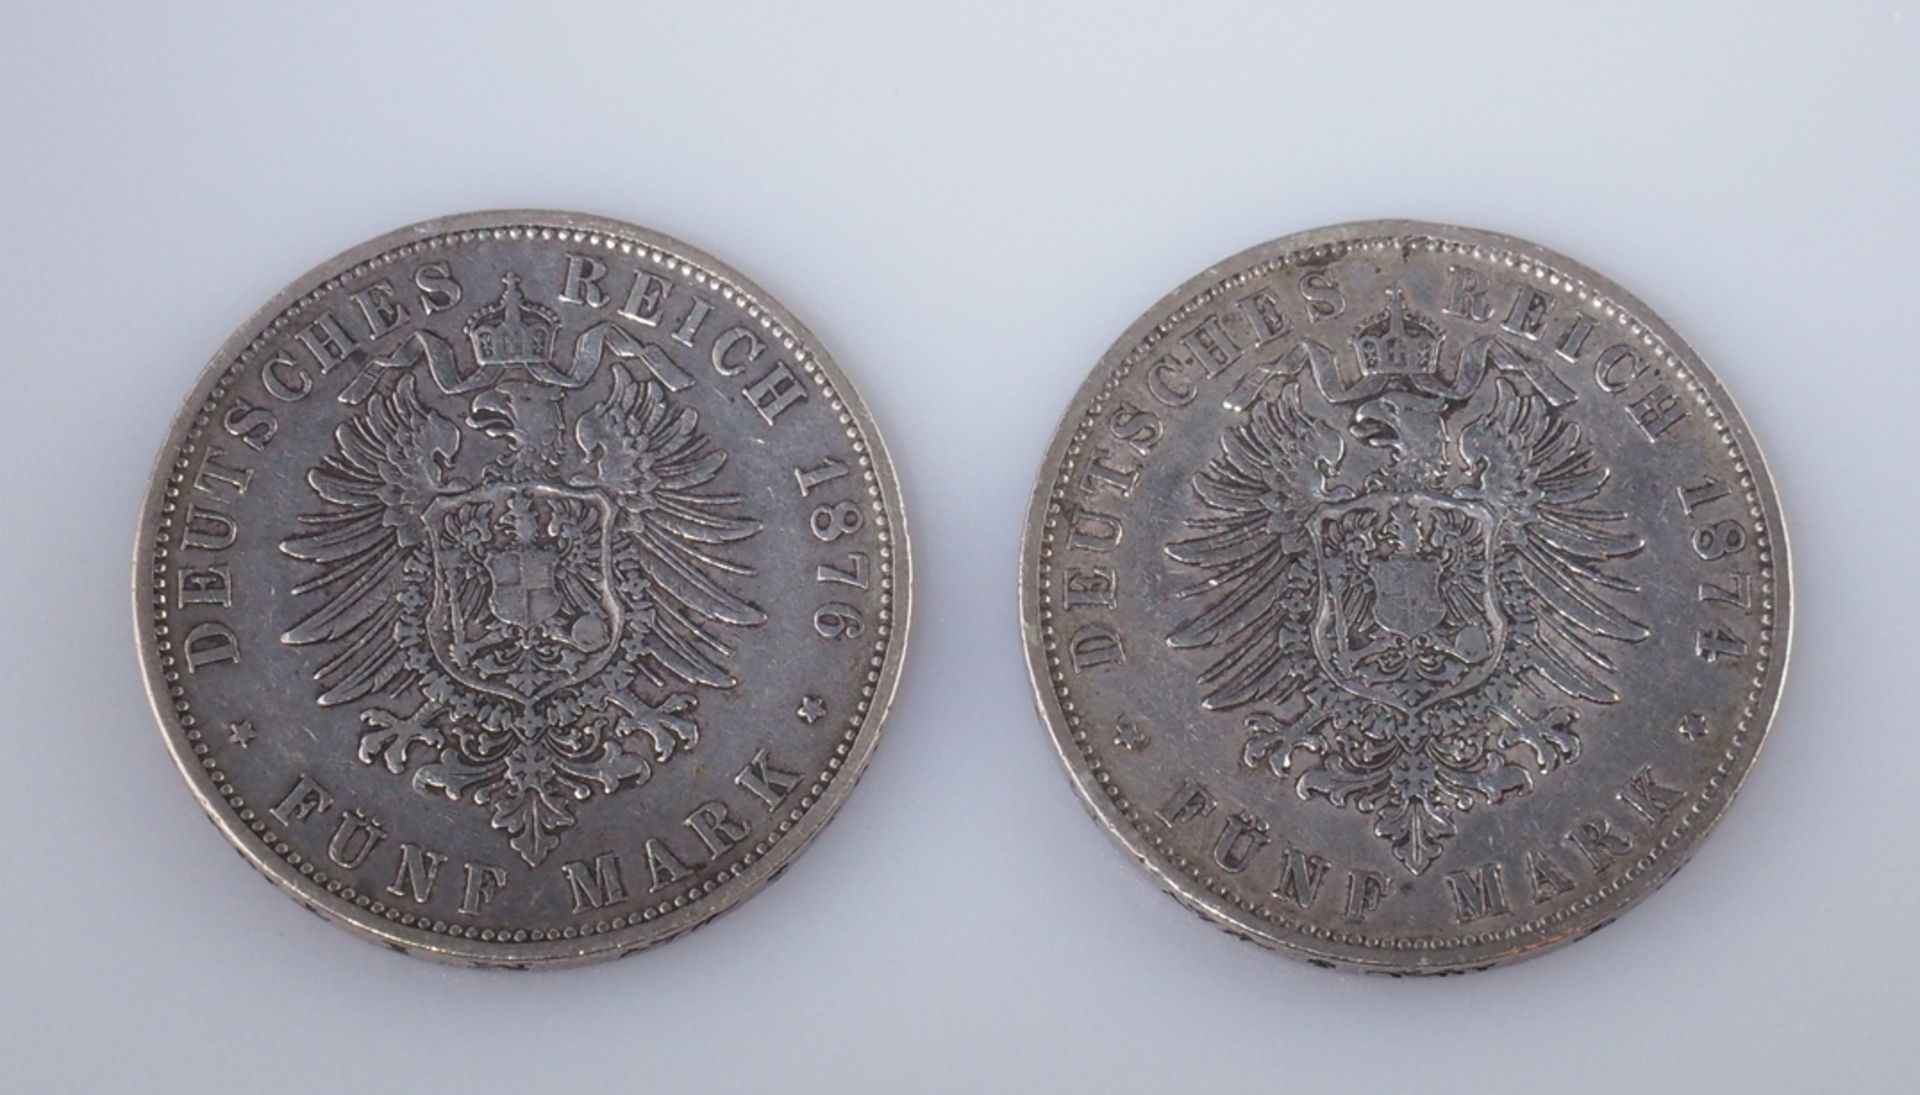 Württemberg. Fünf Mark. Zwei Münzen 1874 und 1876. J 173 - Image 2 of 2